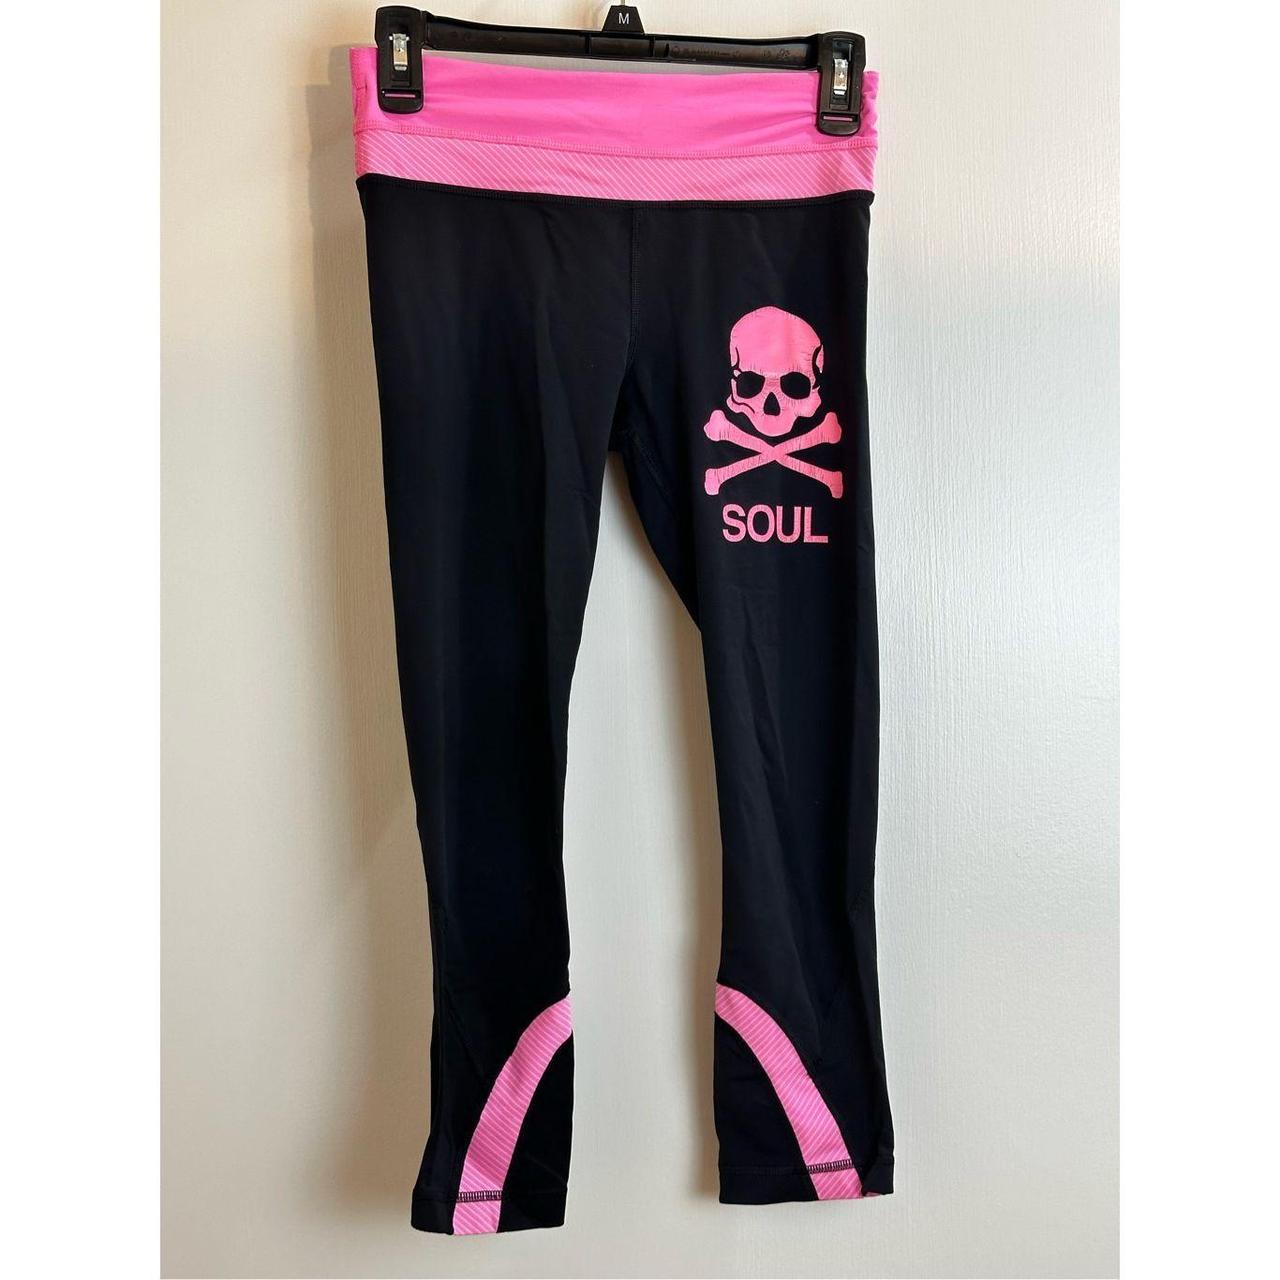 Lululemon run inspire crop leggings pink and black - Depop